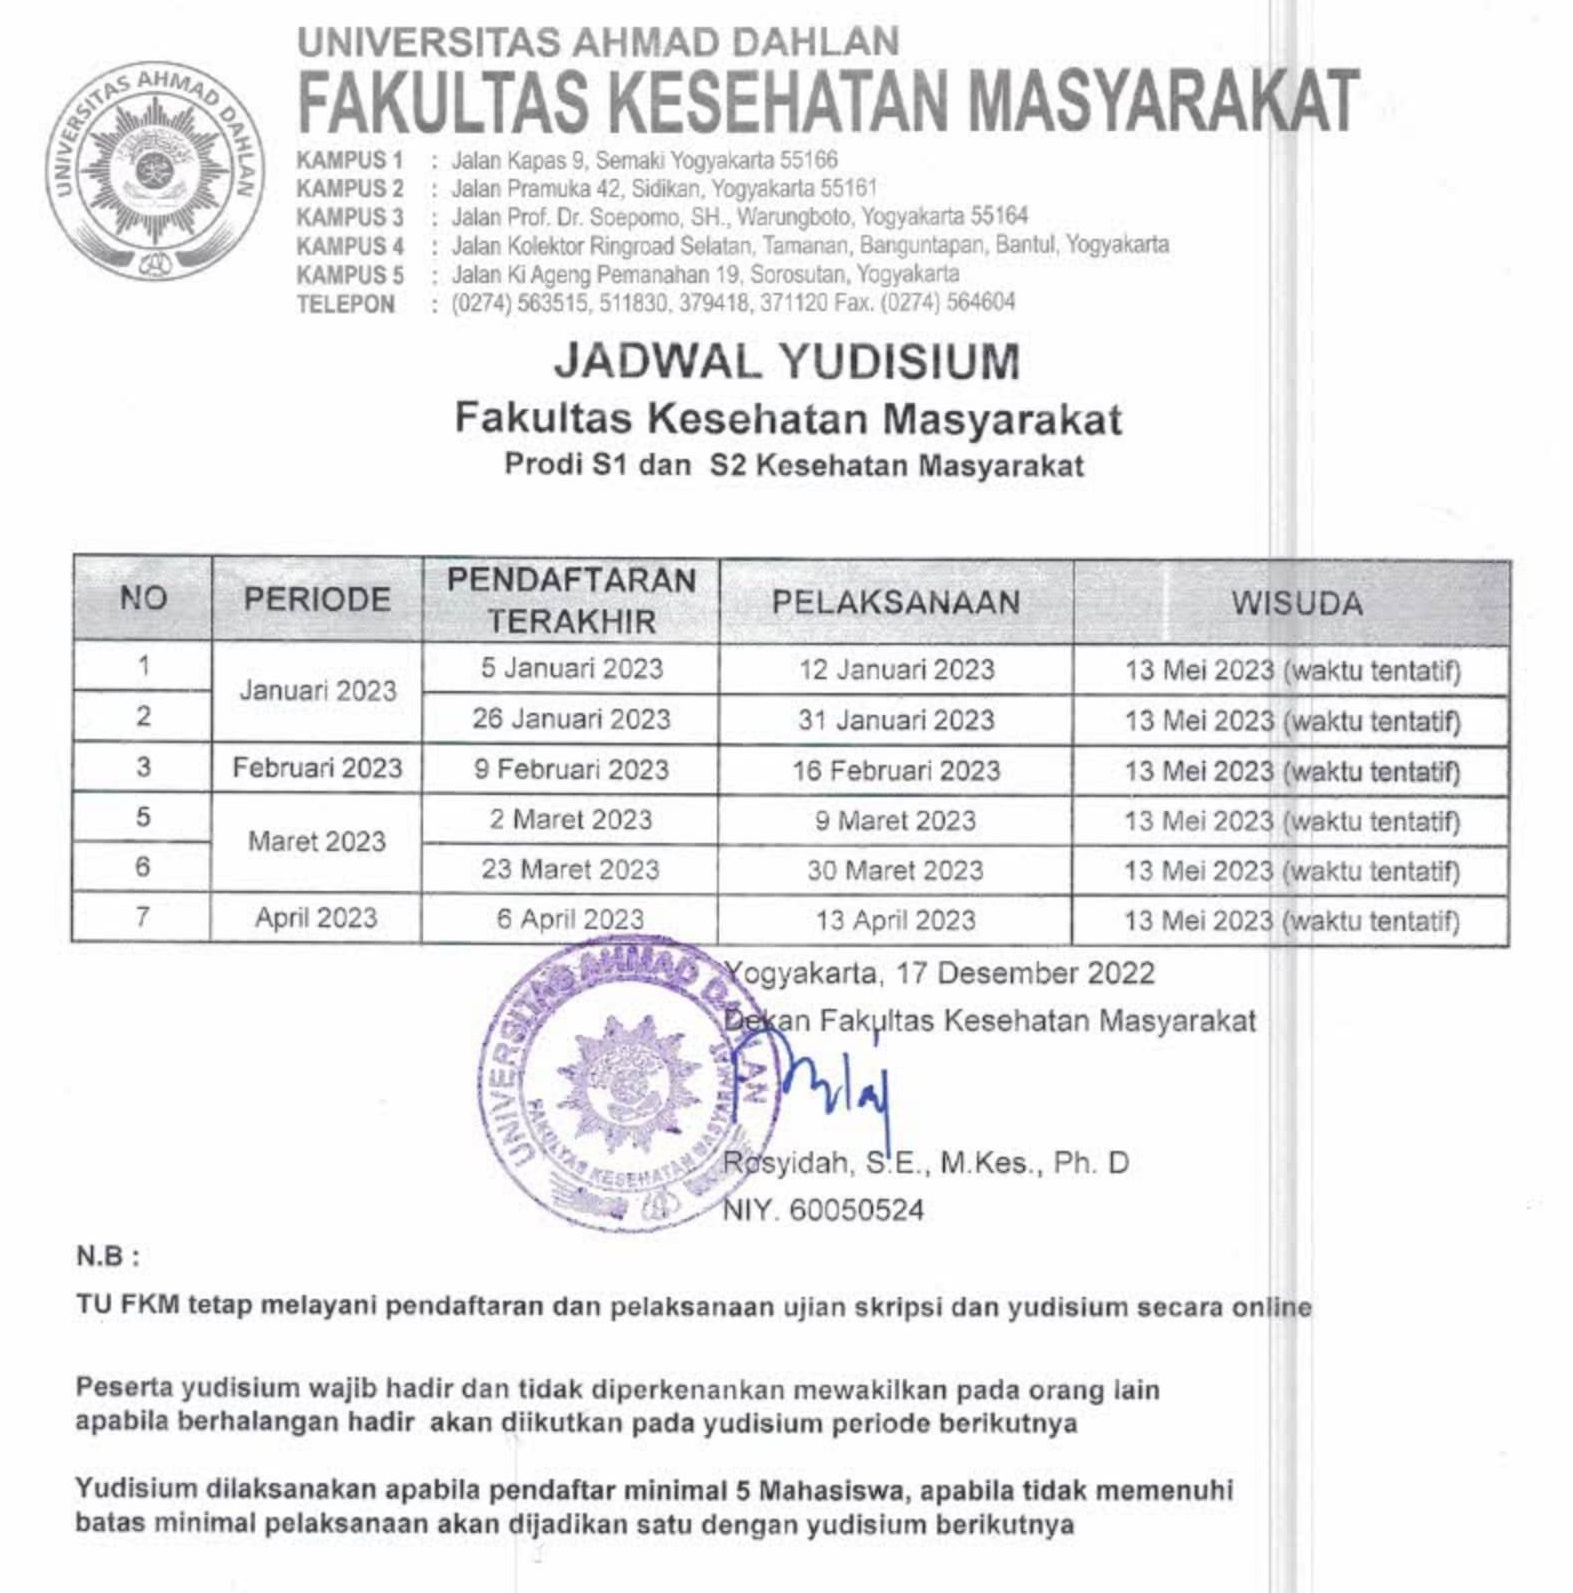 Jadwal Yudisium FKM UAD